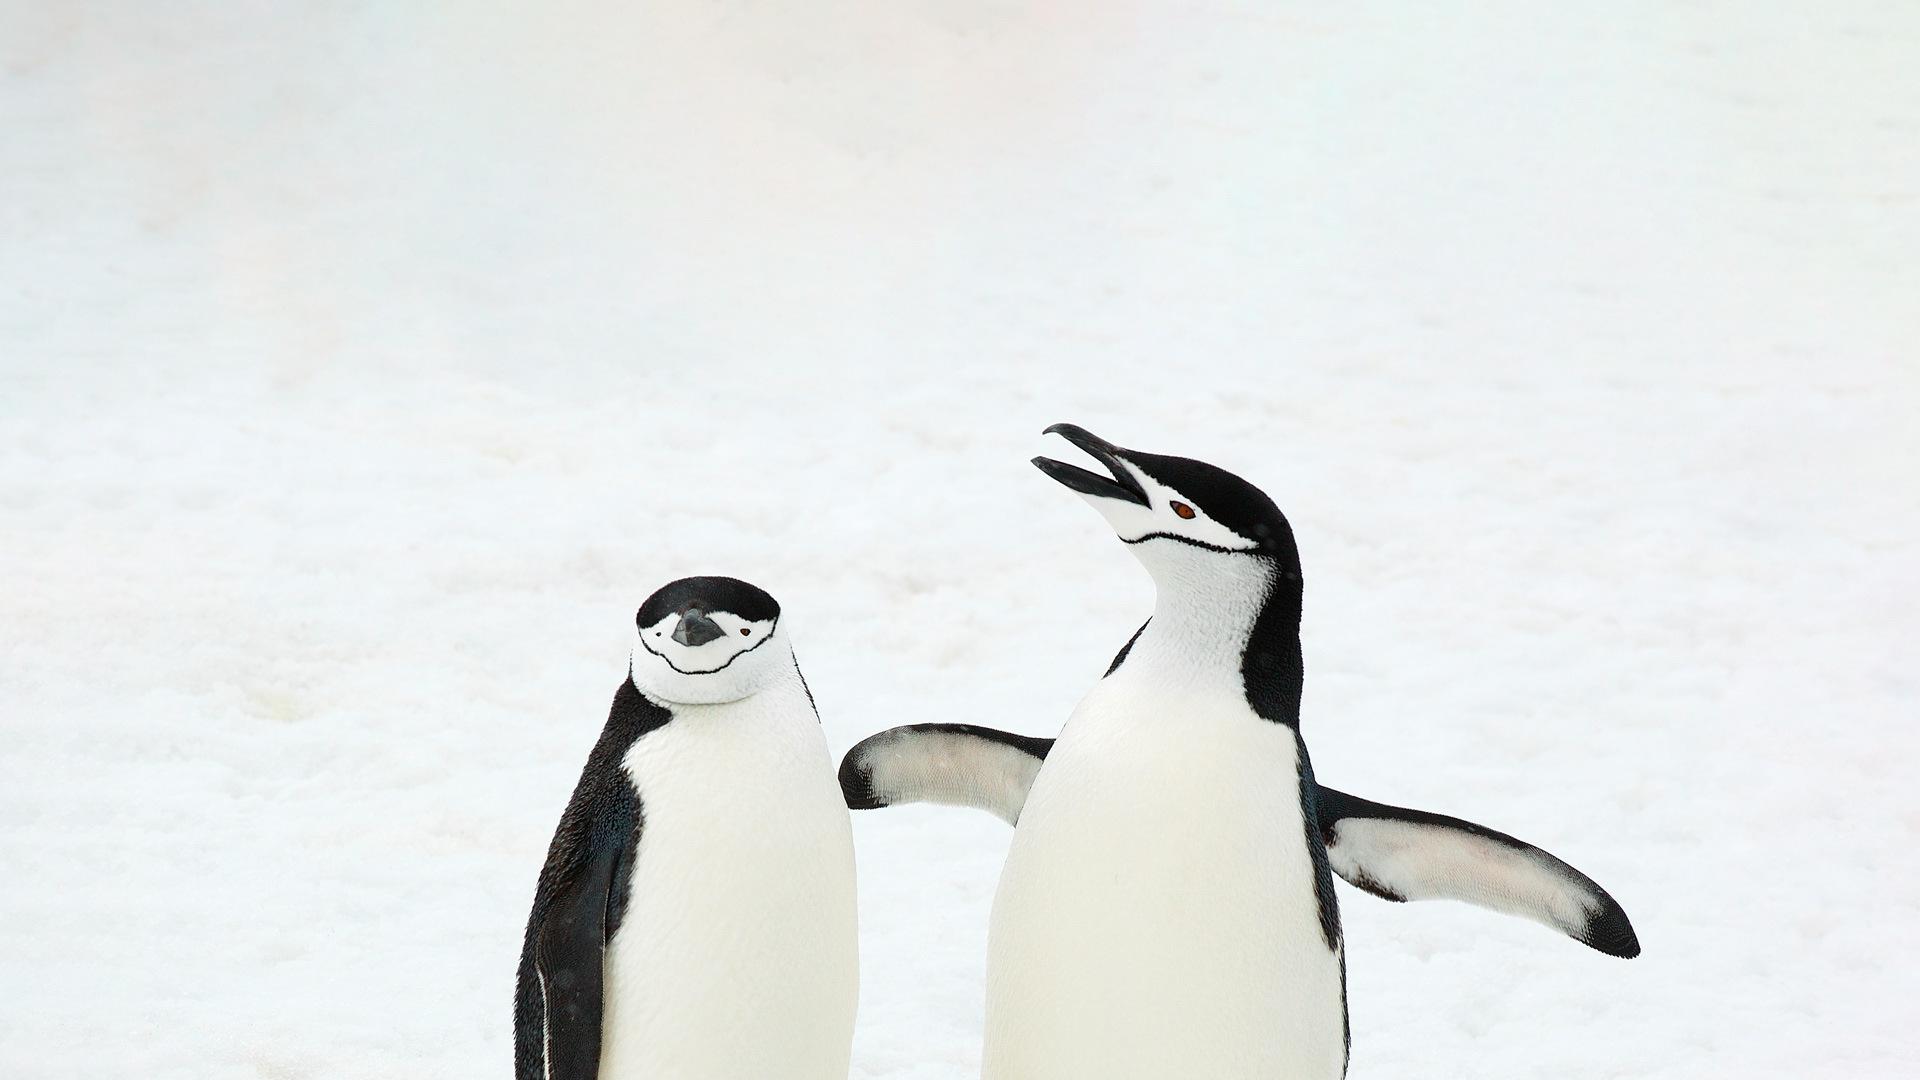 Questi pinguini hanno qualcosa da dire!